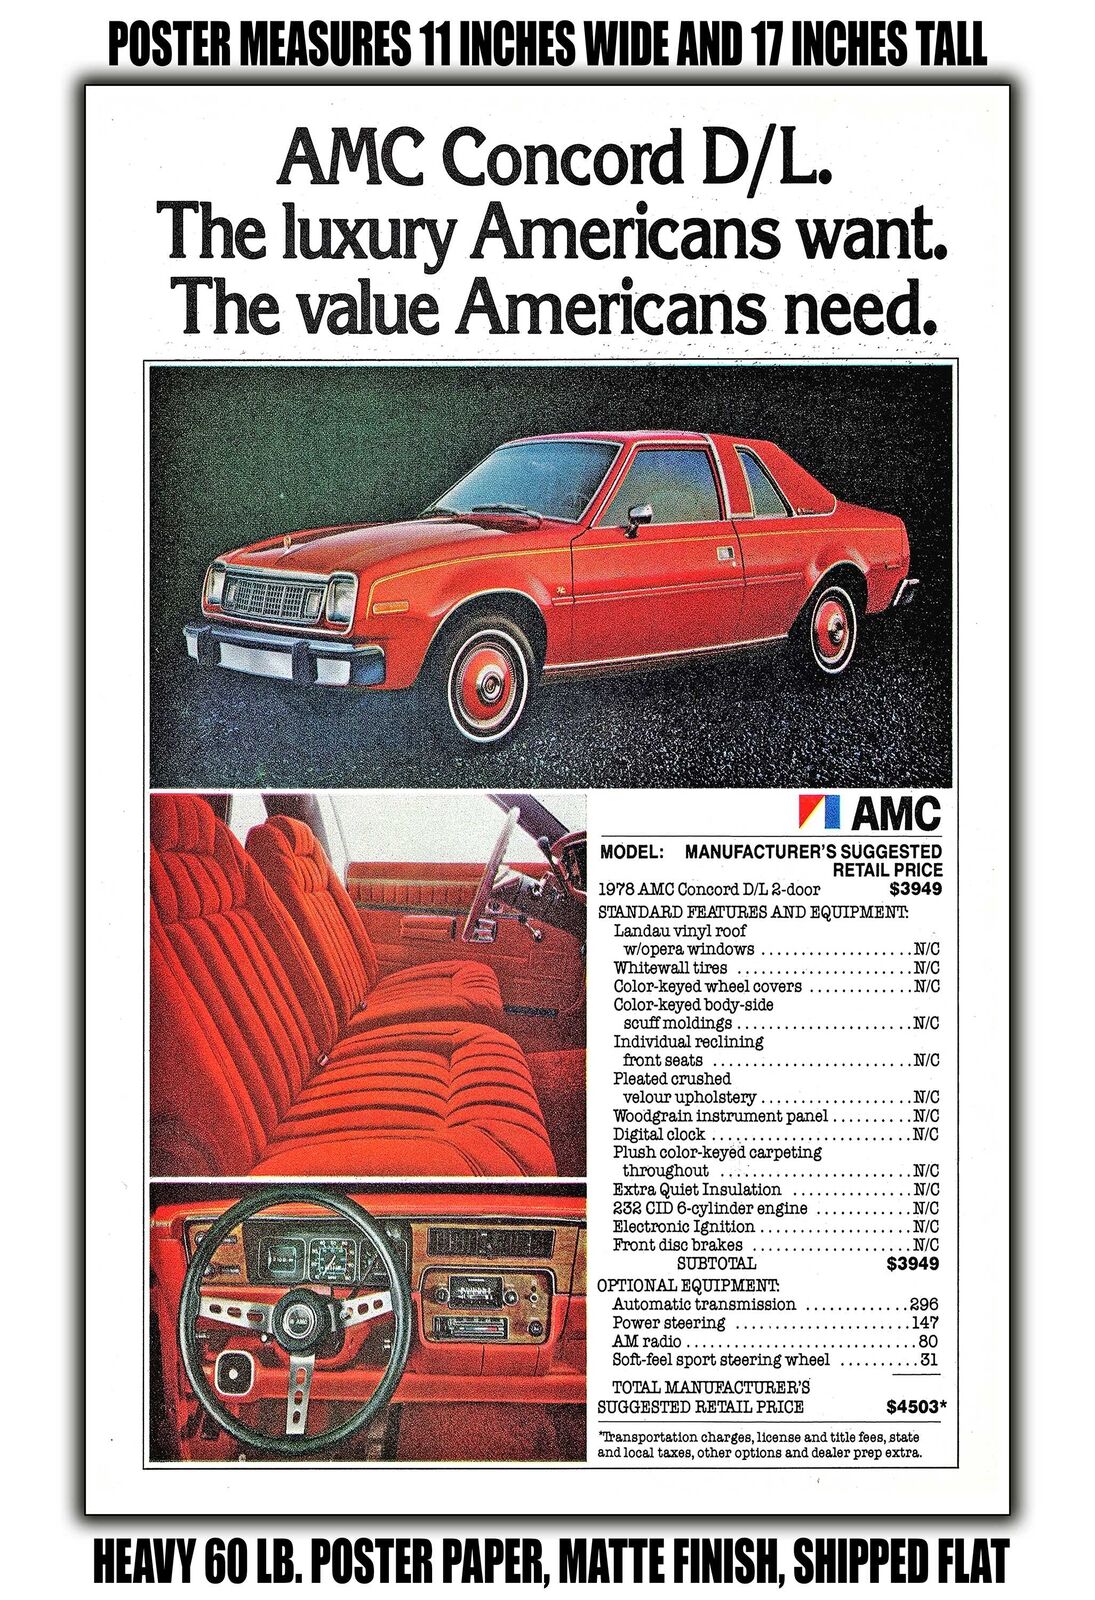 11x17 POSTER - 1978 AMC Concord D/L